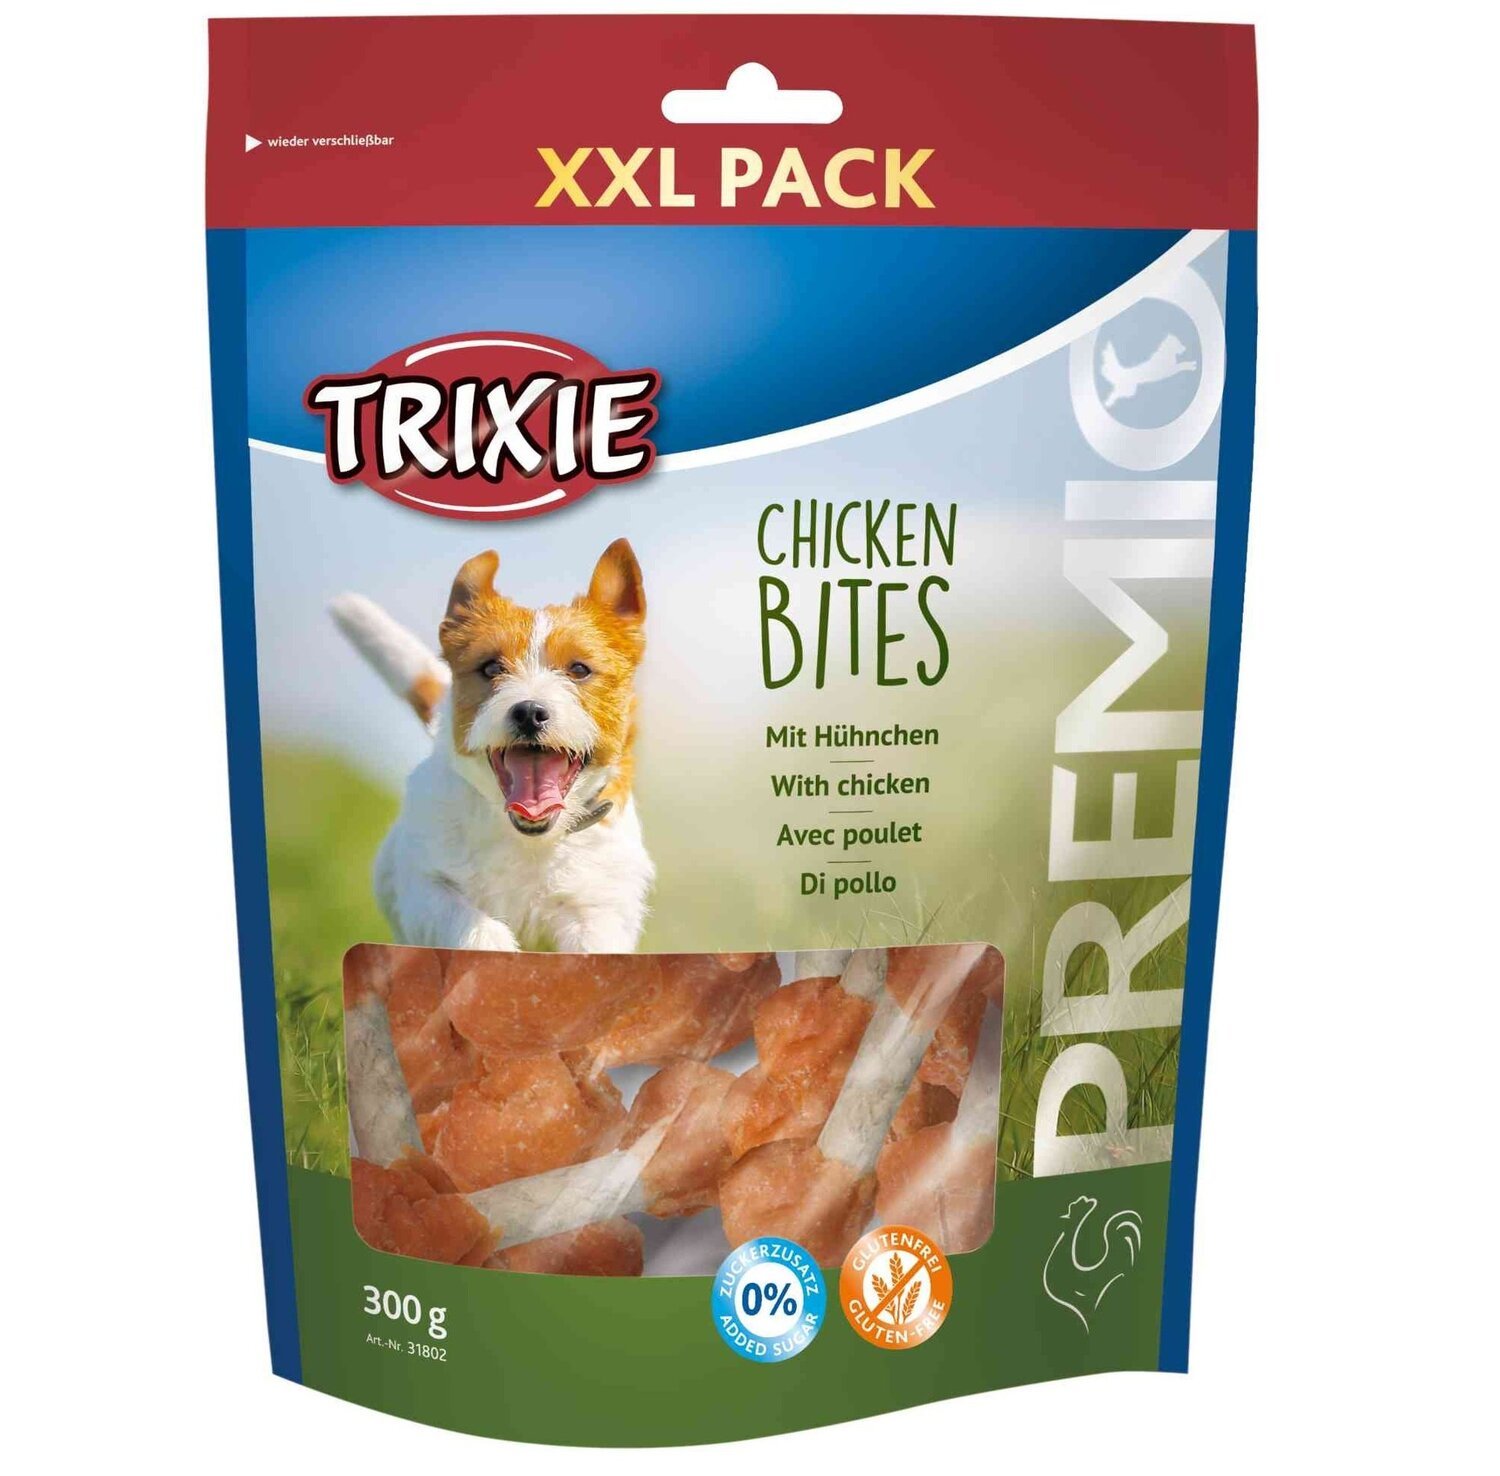 Ласощі для собак Trixie PREMIO Chicken Bites XXL Pack кур. гантелі 300грфото